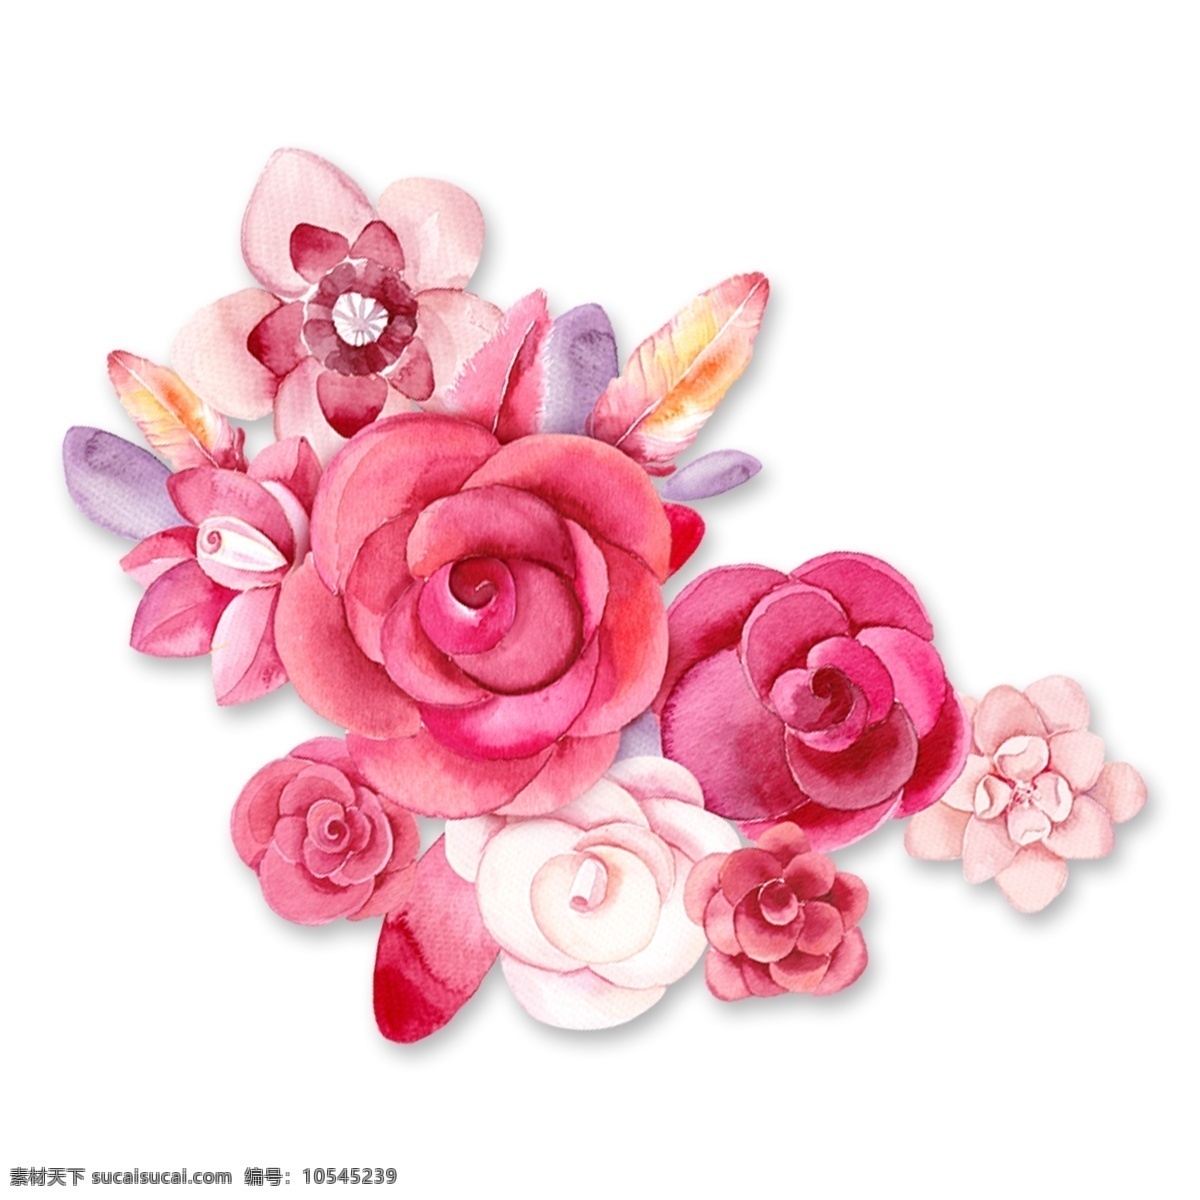 手绘 玫瑰 花卉 植物 叶子 水彩 透明素材 玫瑰花卉 免 扣